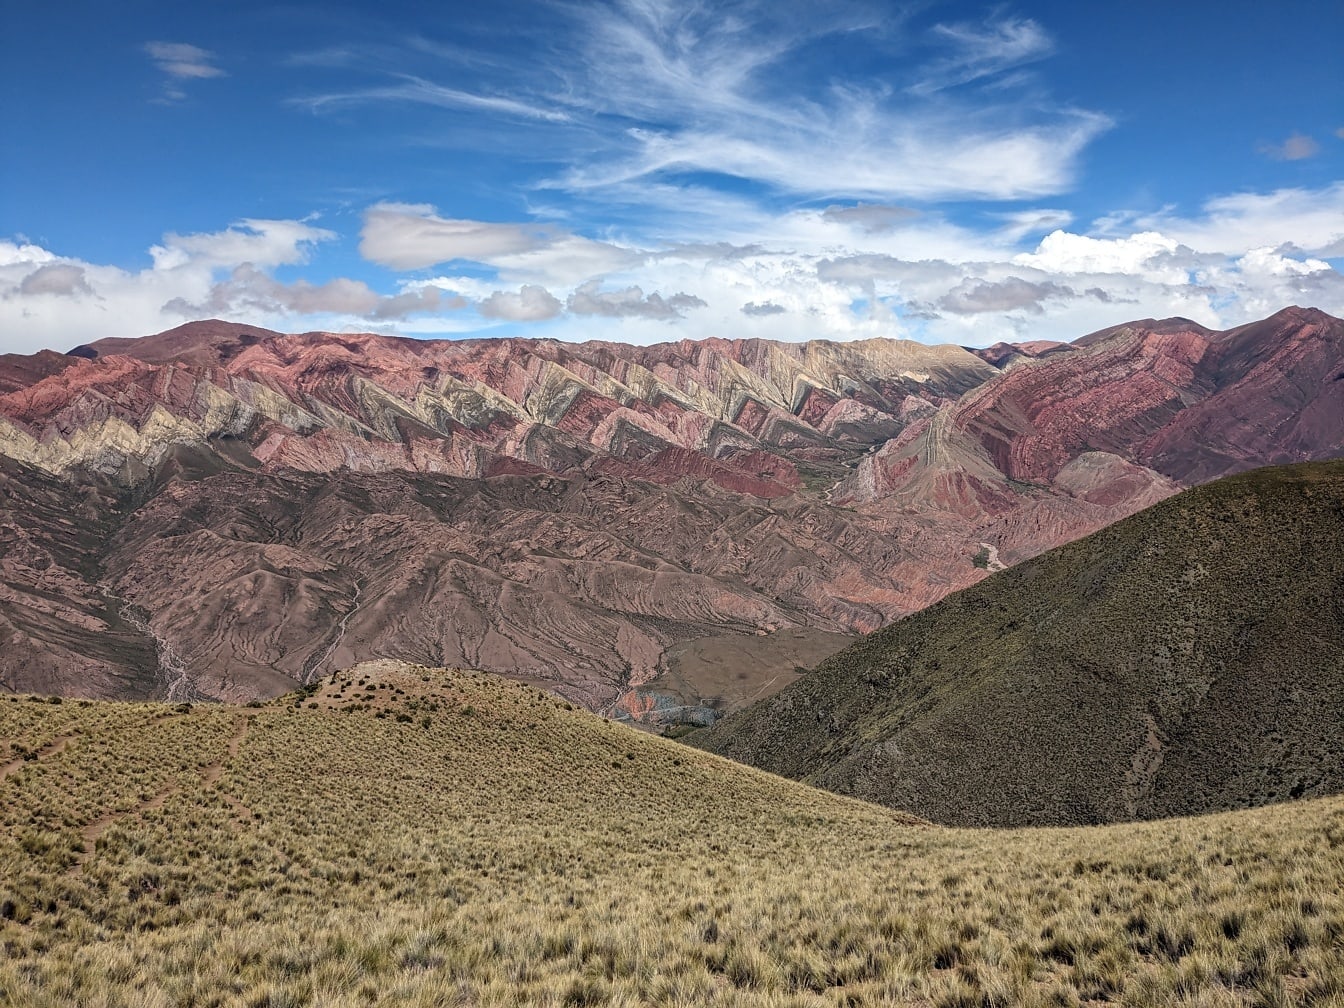 Krajobraz doliny gór Serranía de Hornocal w rezerwacie przyrody Argentyny